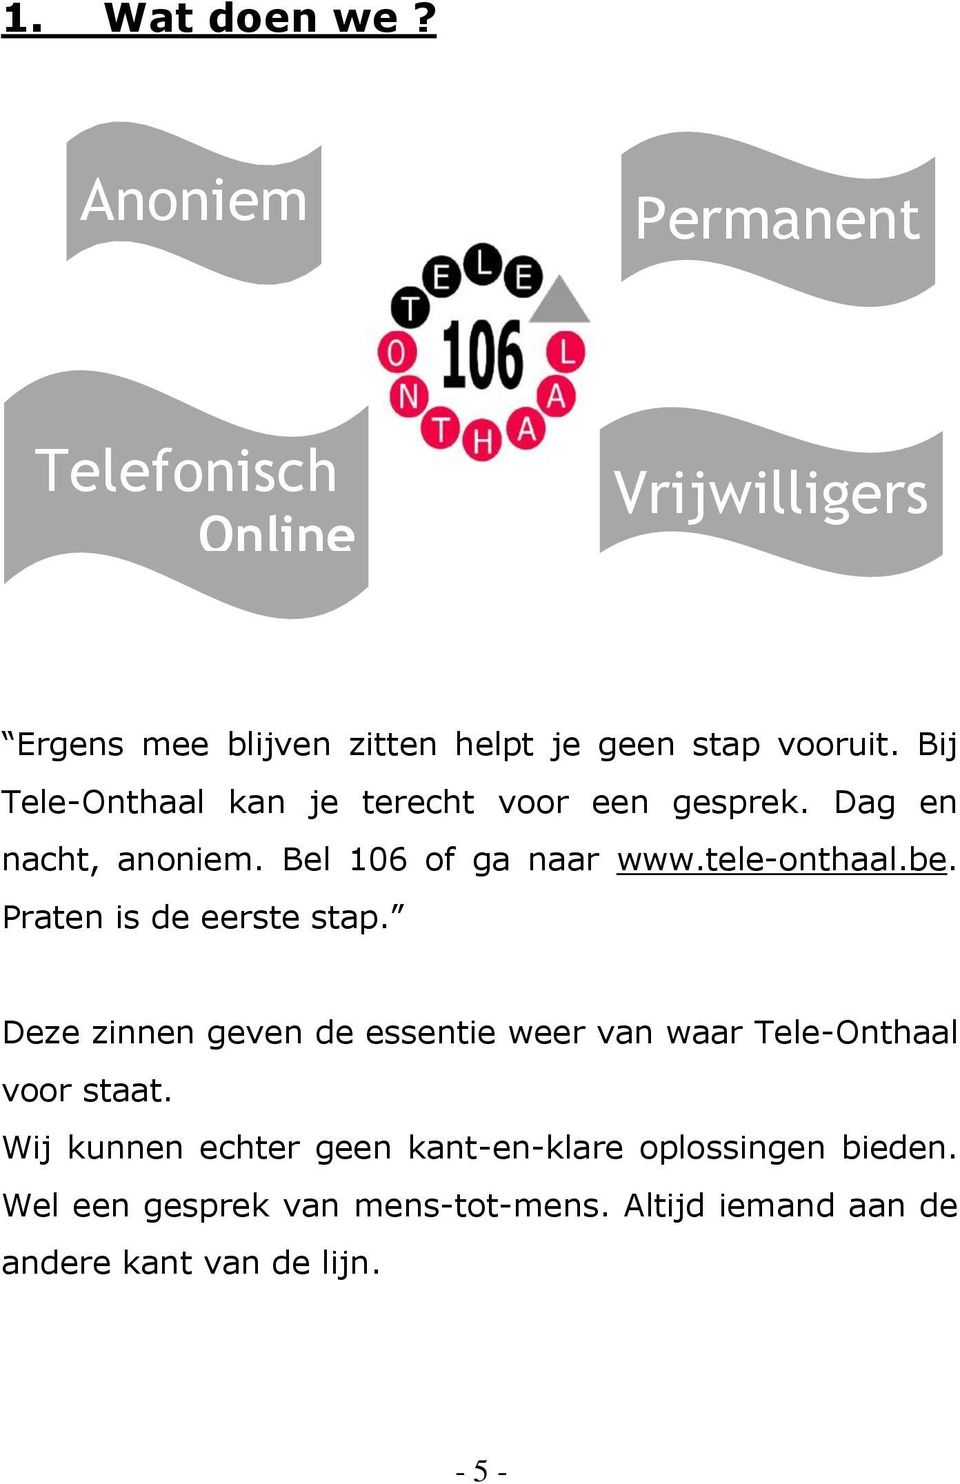 Bij Tele-Onthaal kan je terecht voor een gesprek. Dag en nacht, anoniem. Bel 106 of ga naar www.tele-onthaal.be.